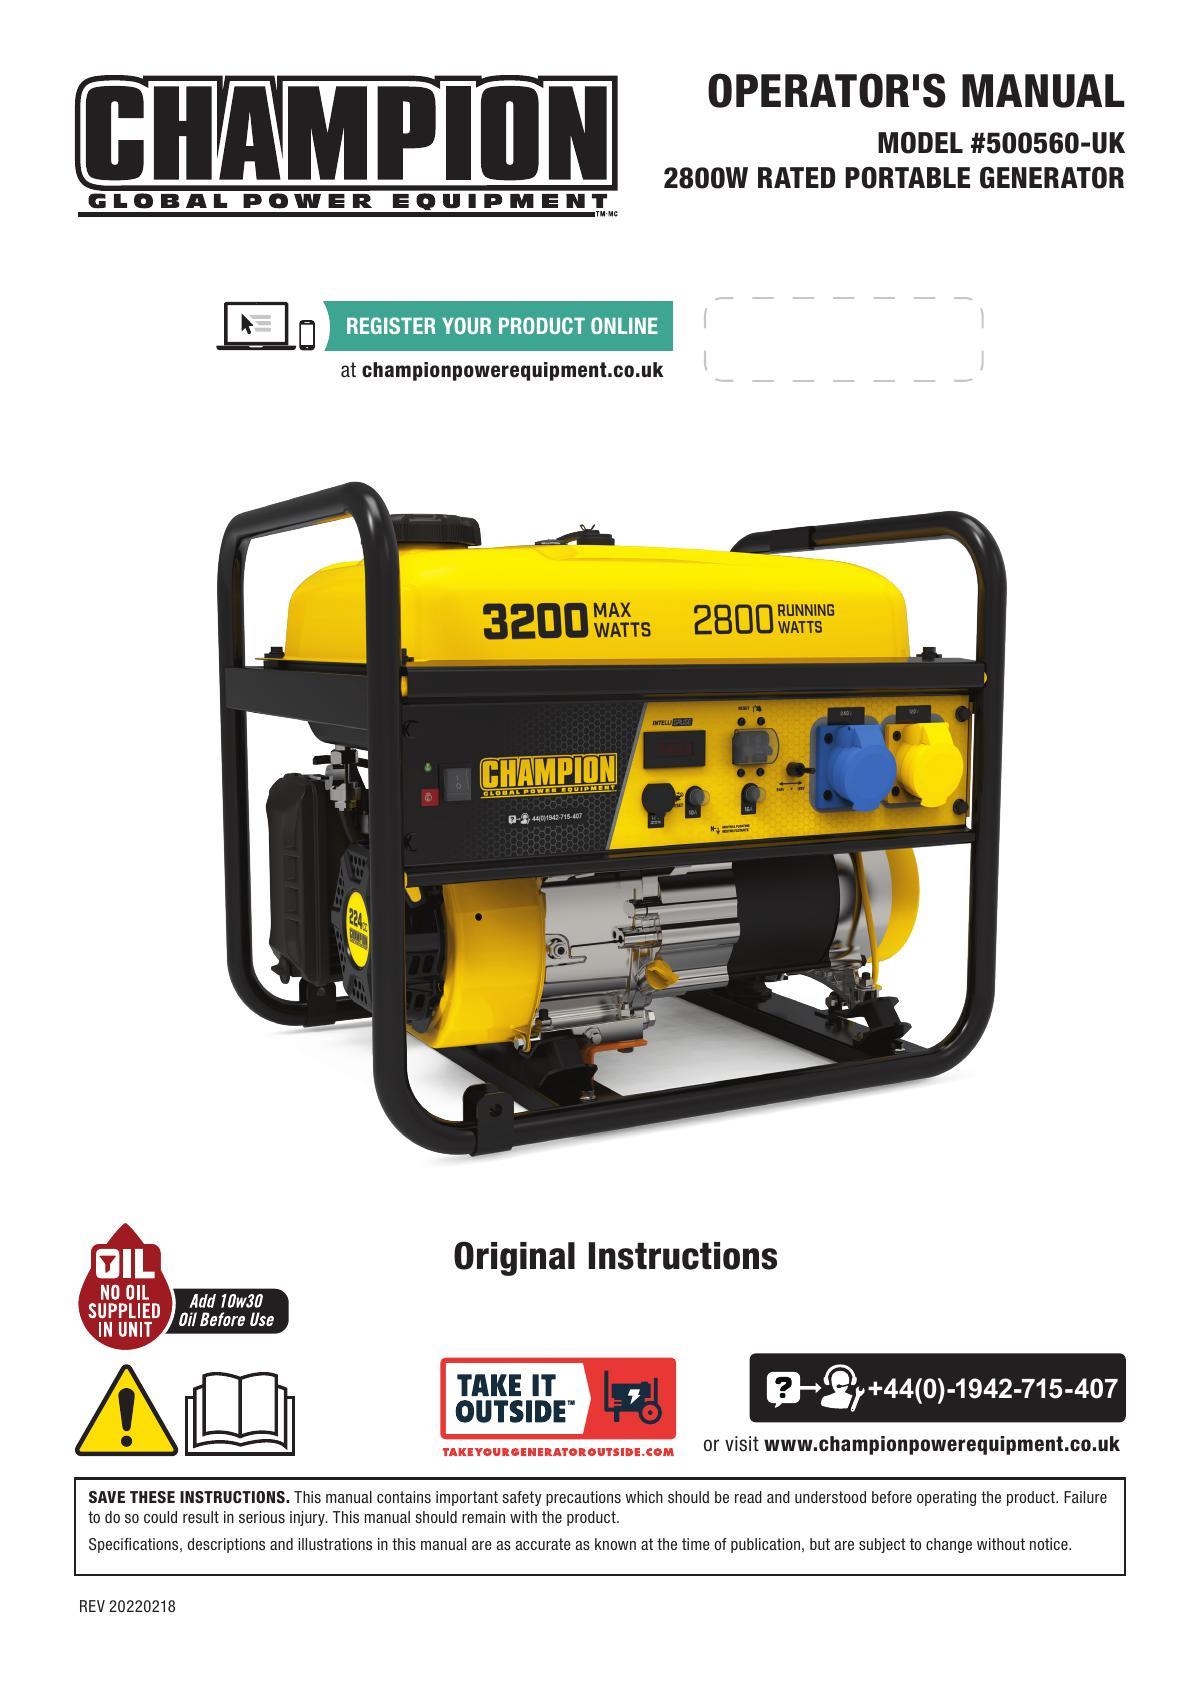 operators-manual-for-model-500560-uk-2800w-rated-portable-generator.pdf